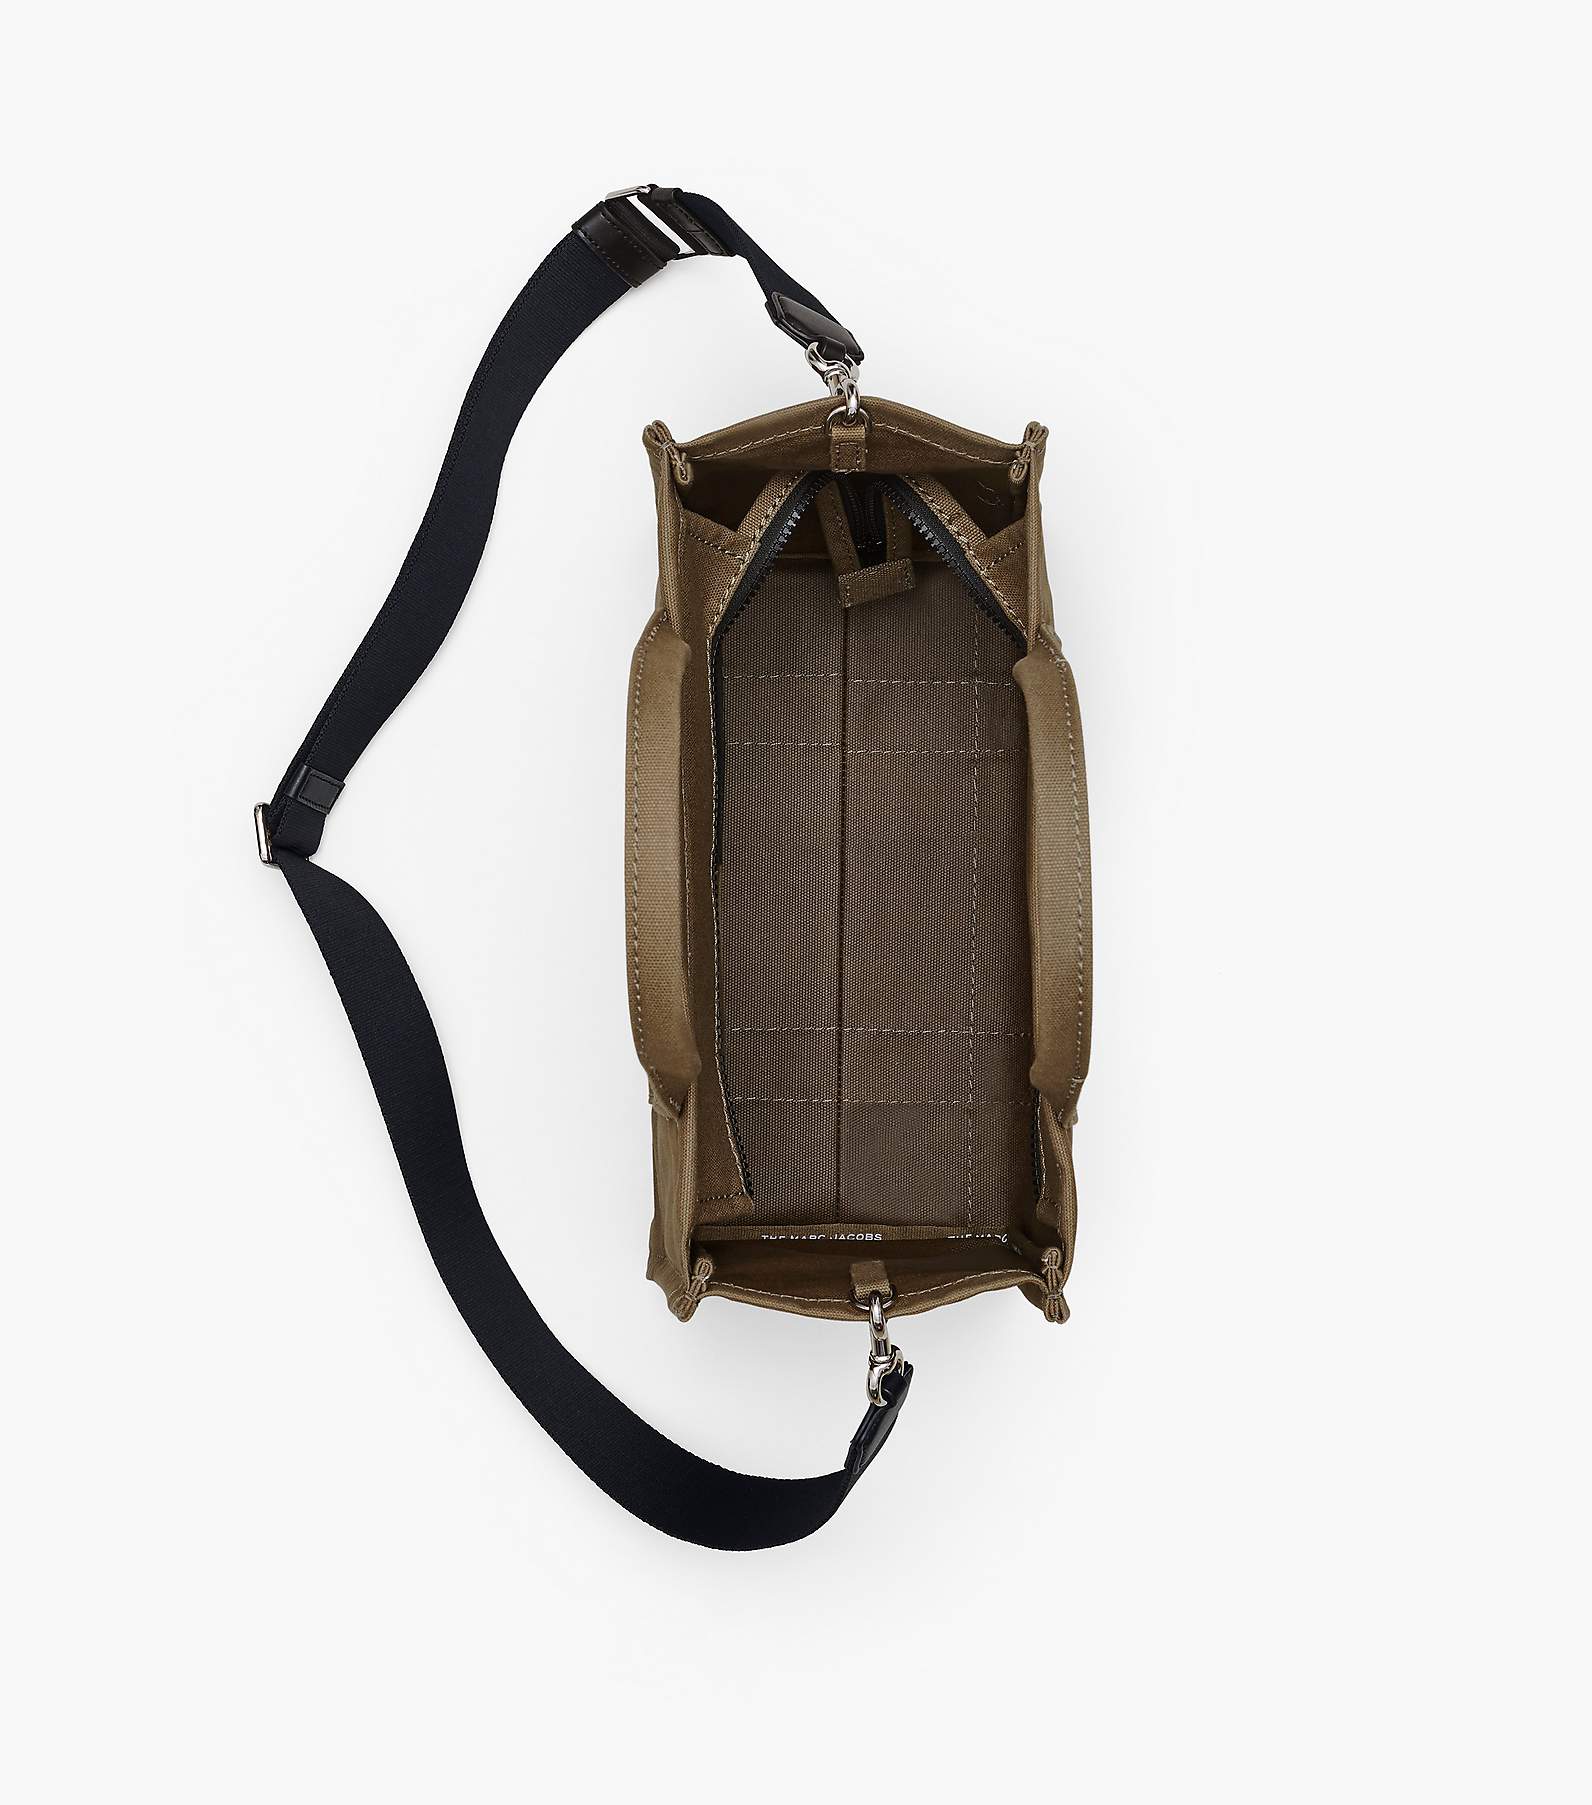 MJ Small Tote Bag Vegan Leather Handbag Organizer in Dark Beige Color